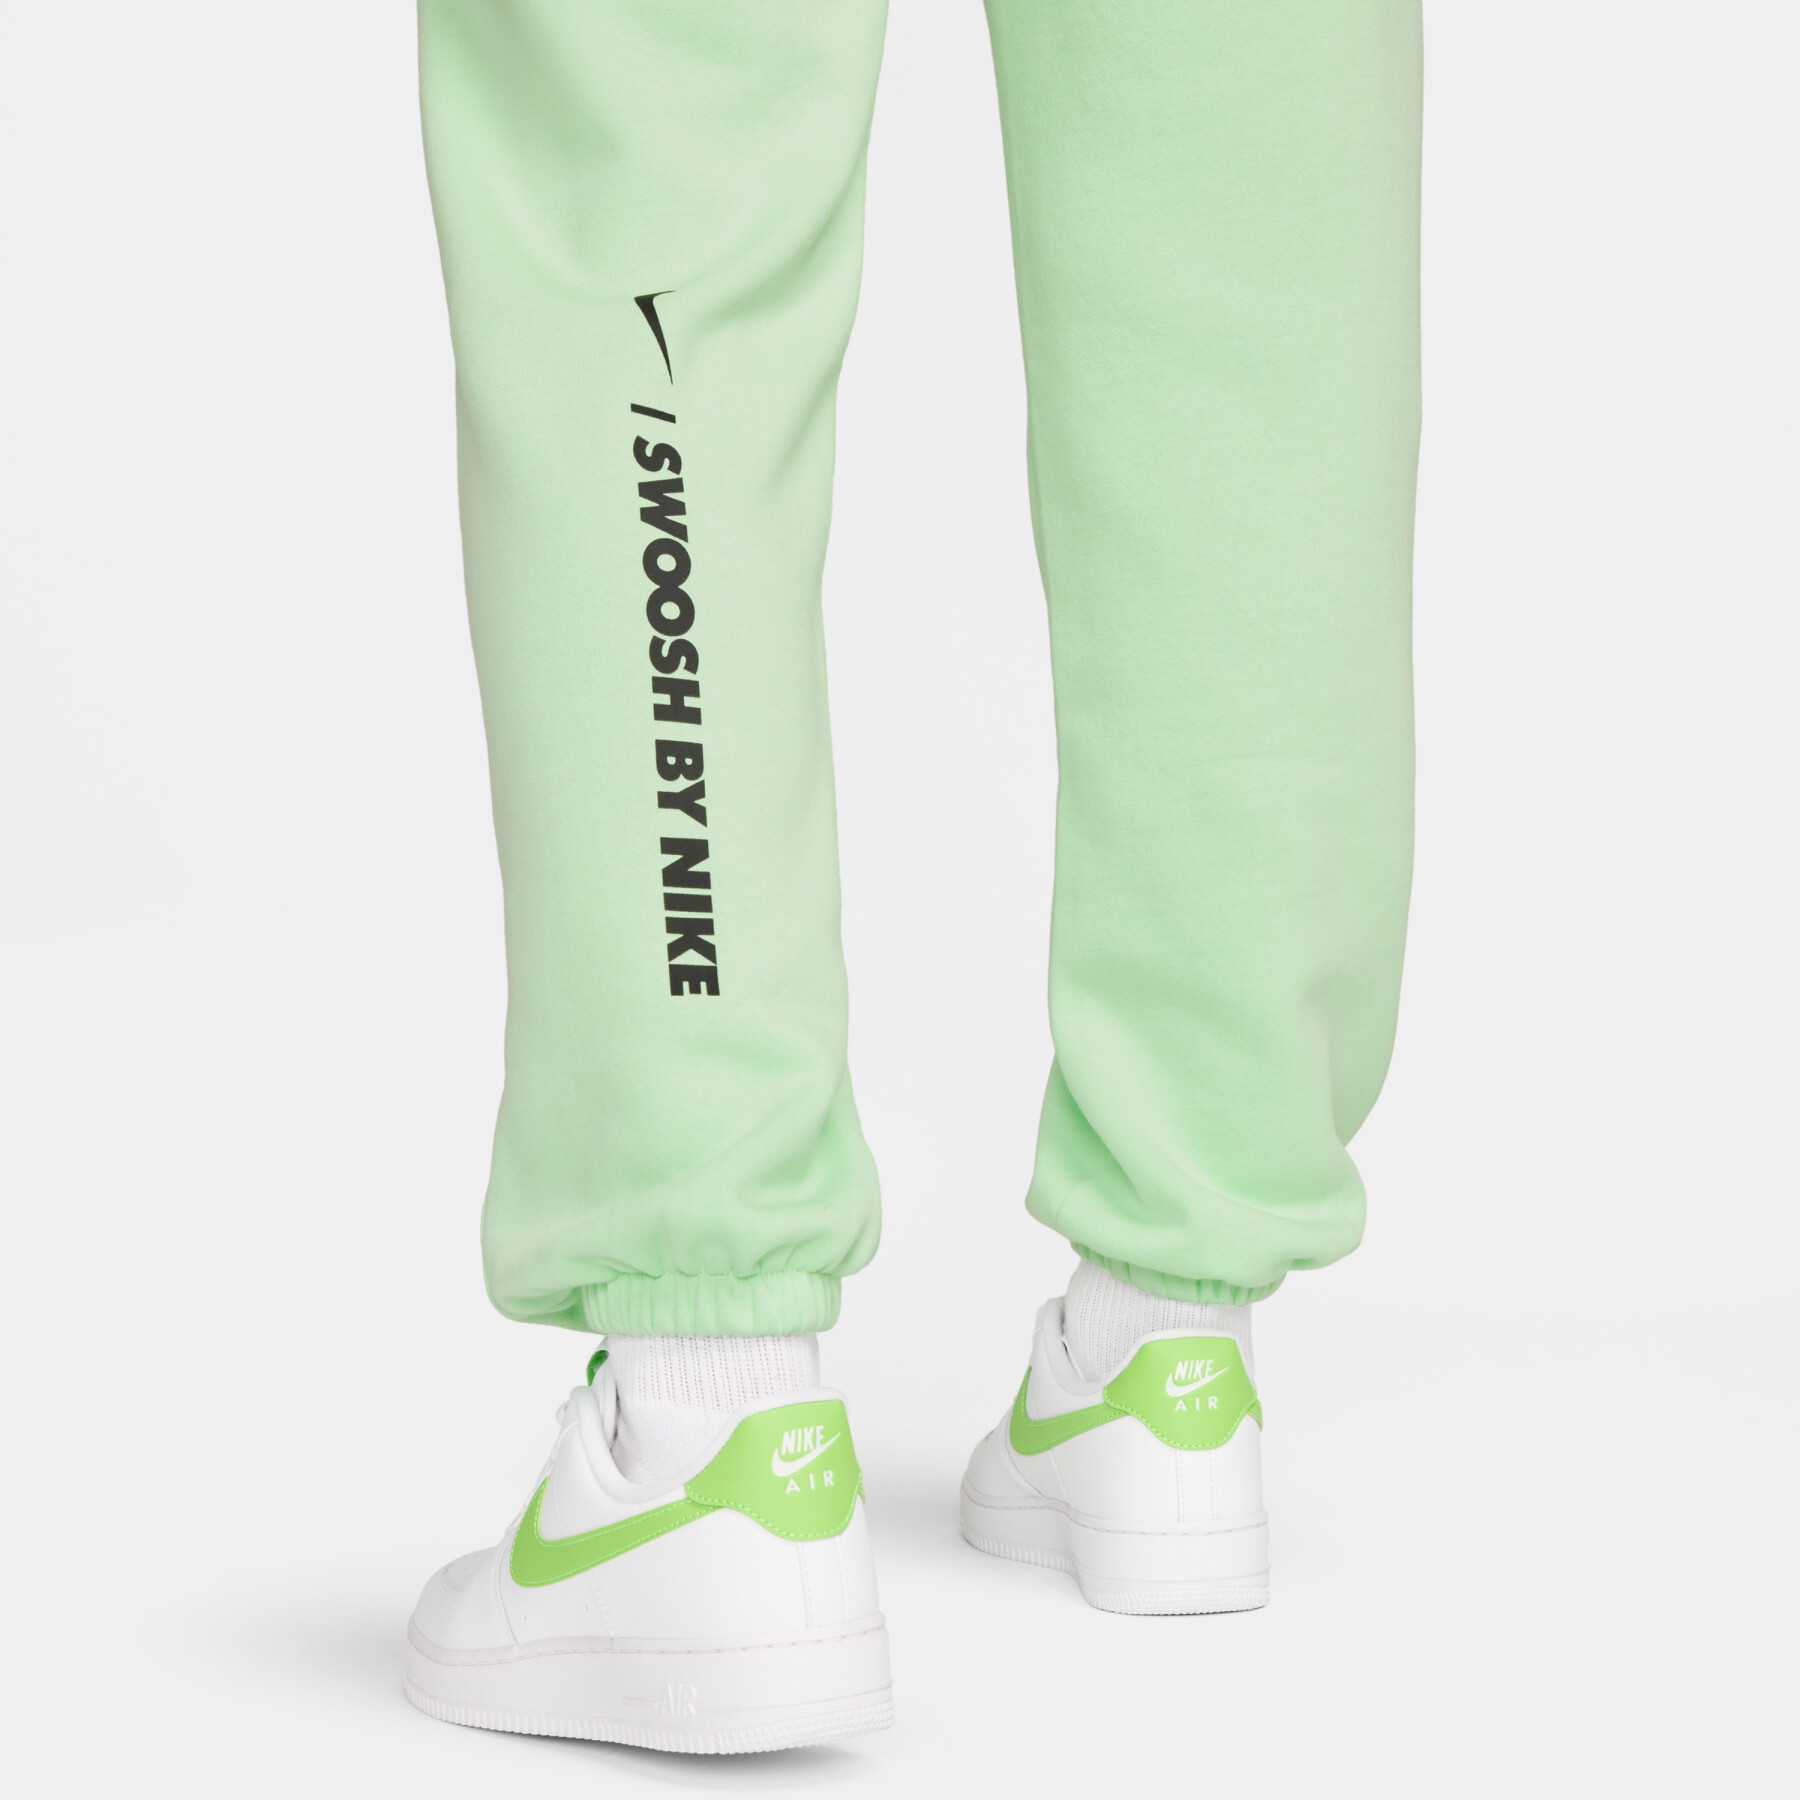 Pantalón de chándal mujer Nike Fleece